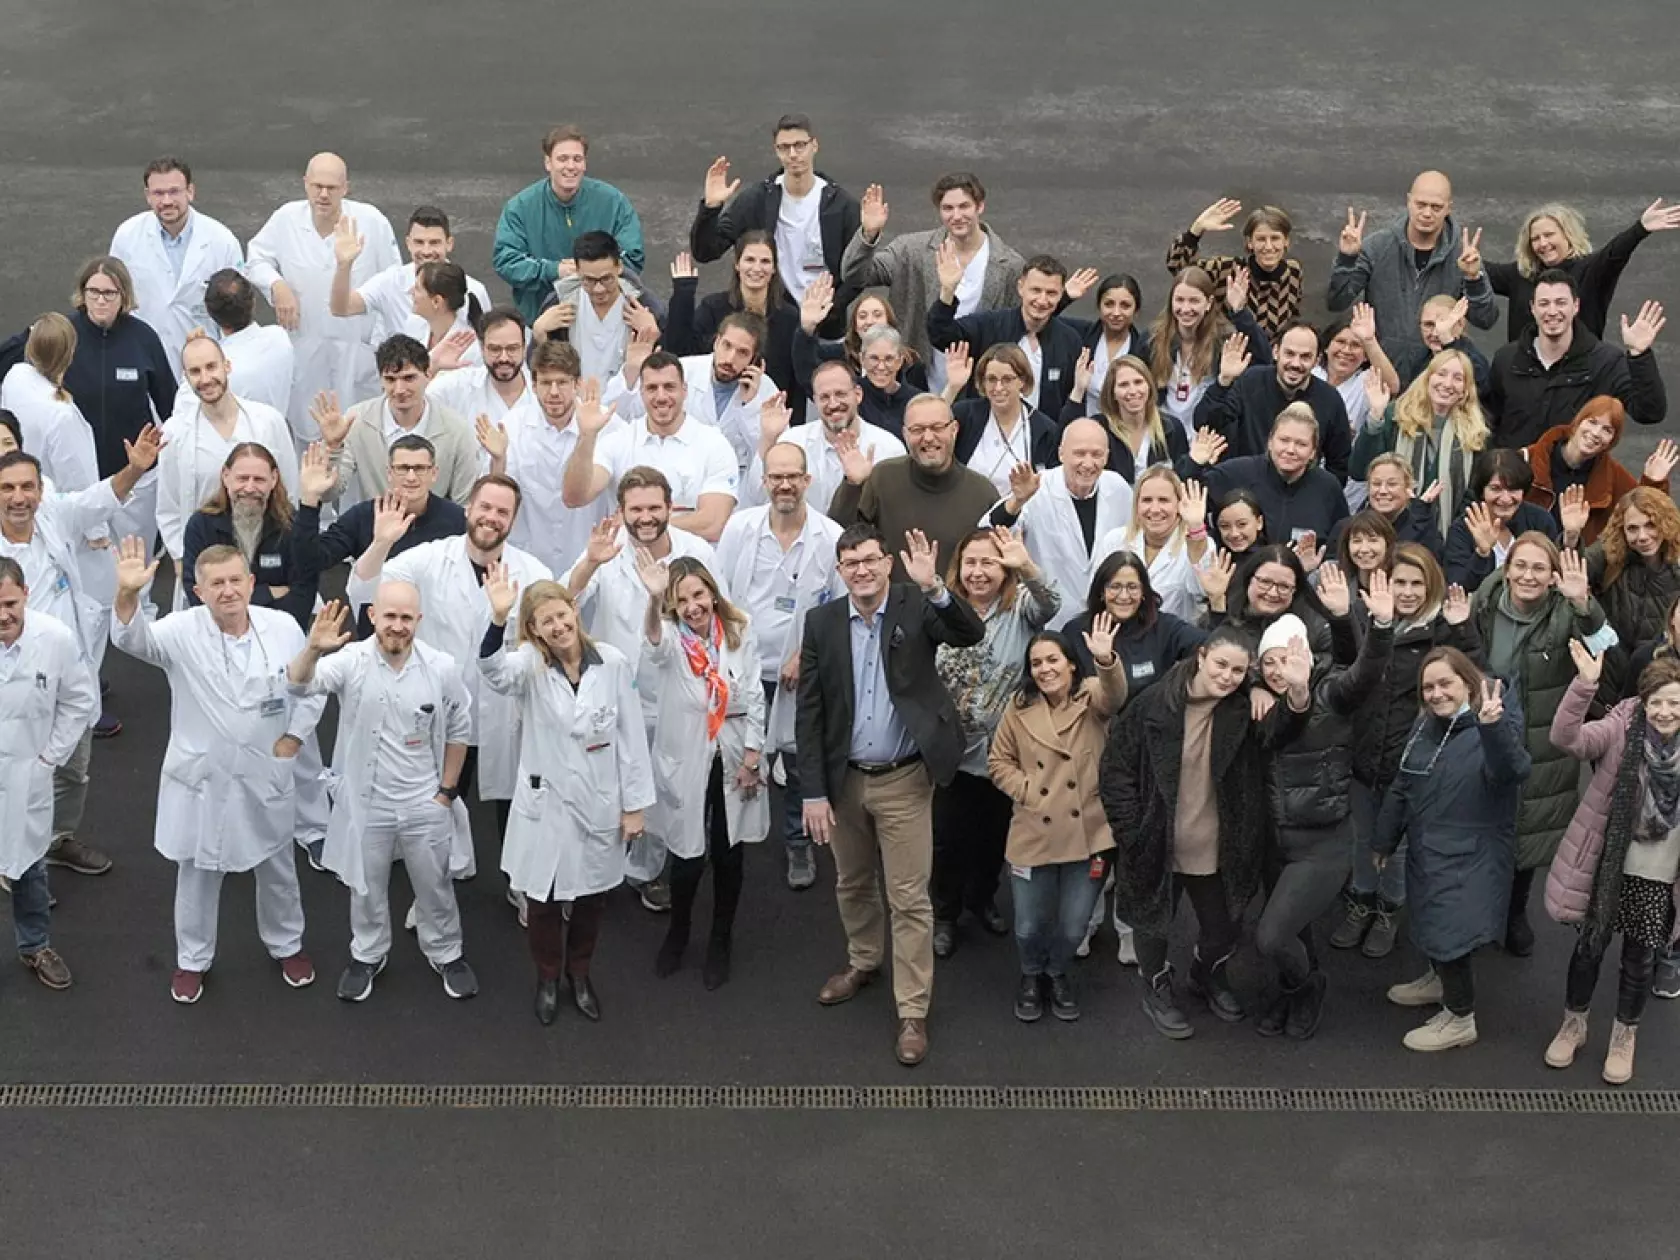 Wir haben eines der grössten Radiologie-Teams der Schweiz. Trotzdem pflegen wir einen kollegialen Umgang untereinander.